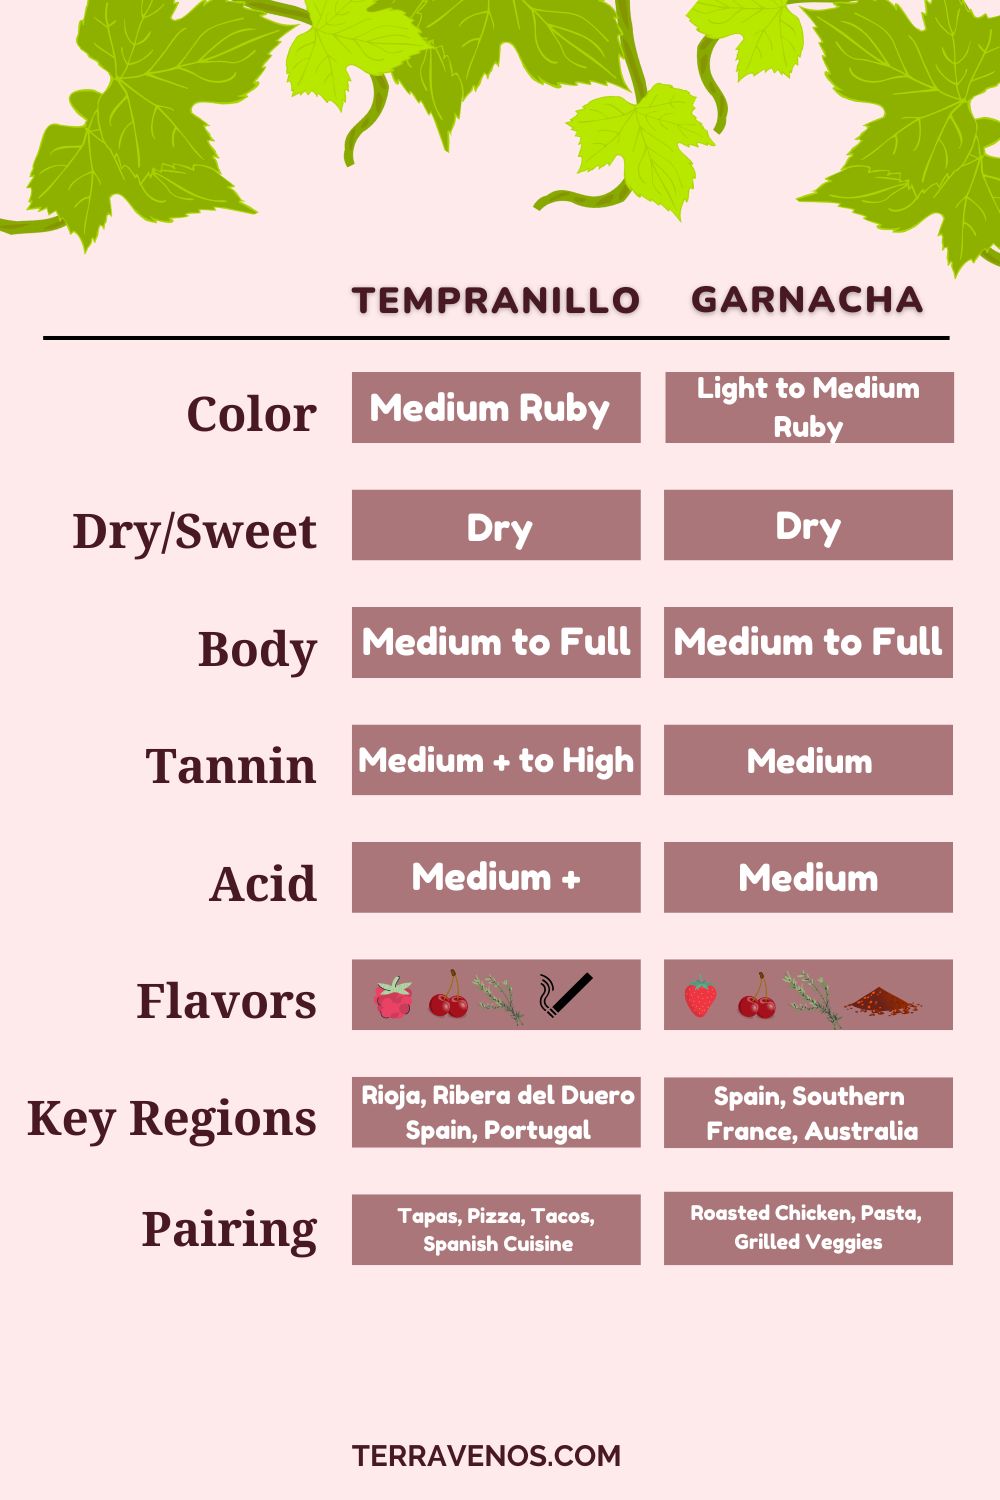 tempranillo-vs-garnacha-wine-comparison-infographic